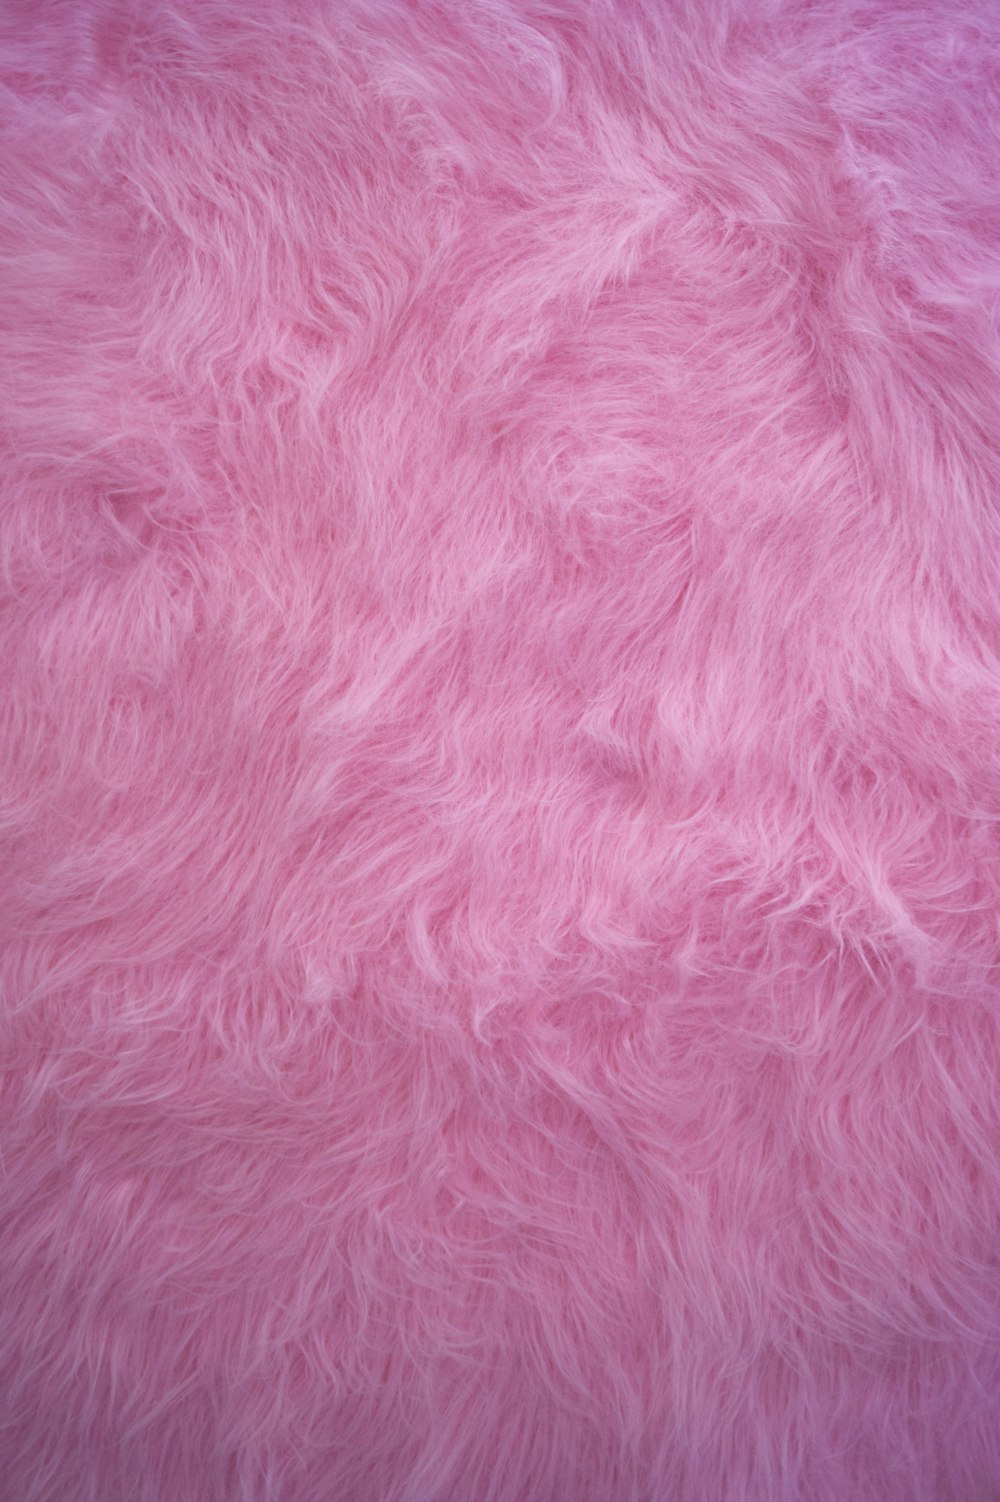 クローズアップ写真のピンクのテキスタイル